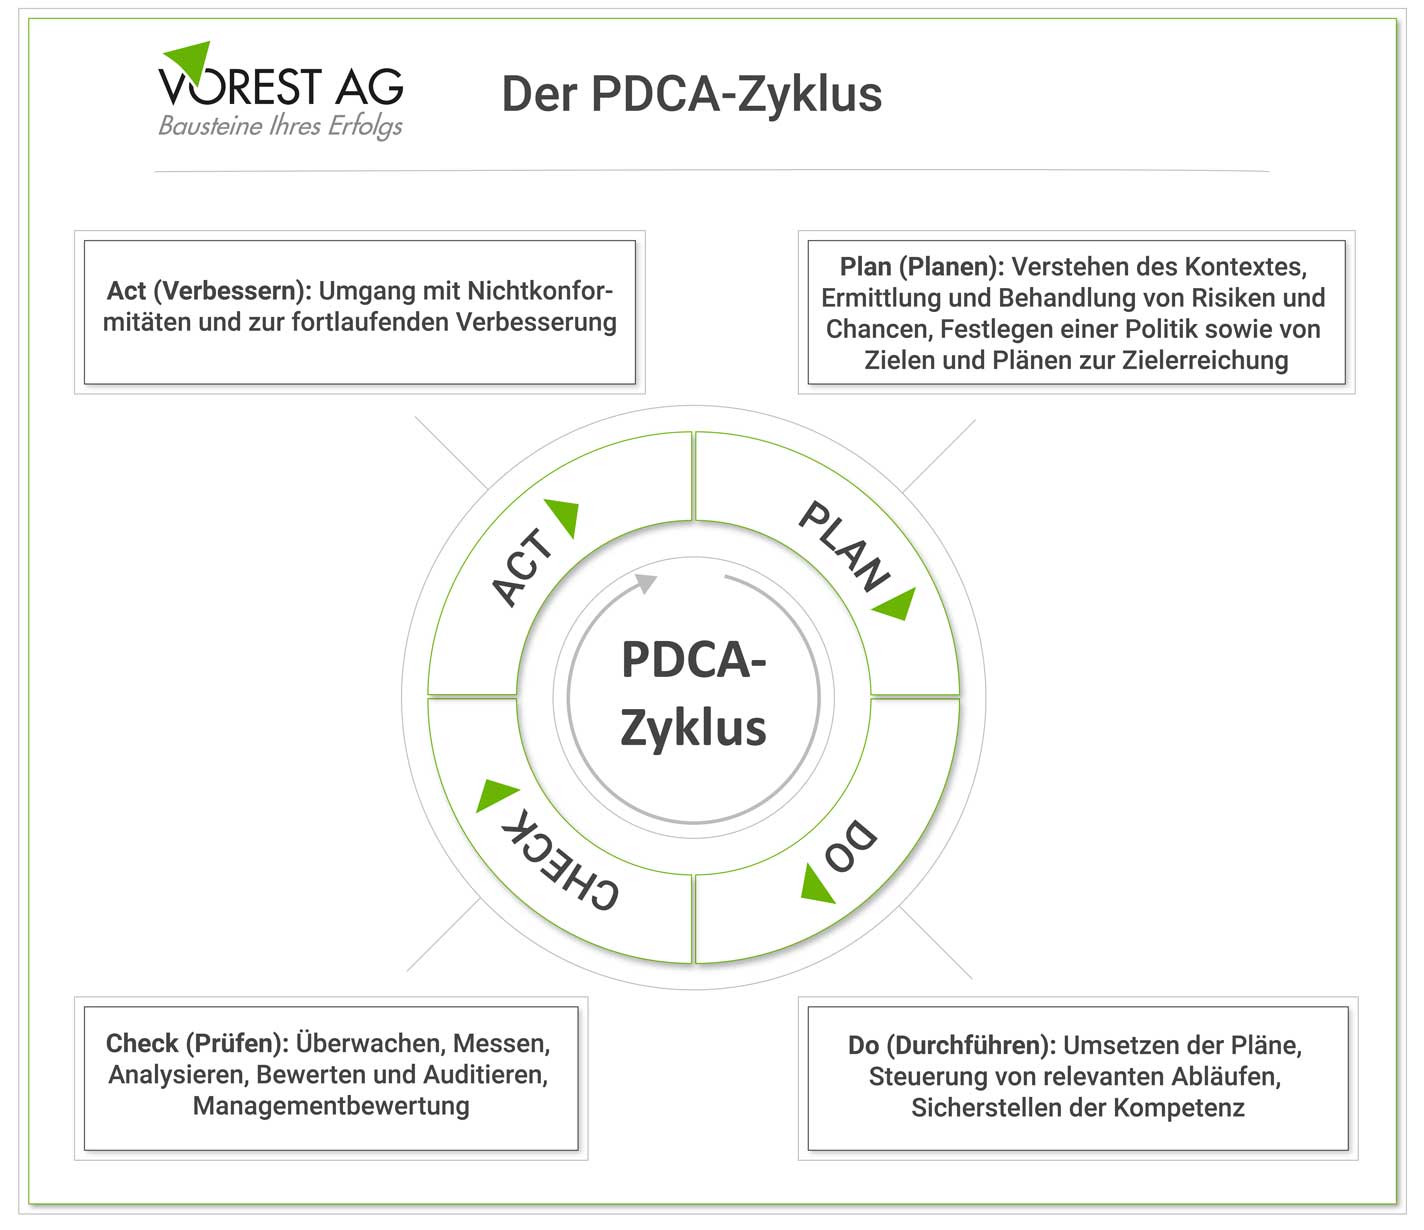 Der PDCA Zyklus bzw. Deming Kreis